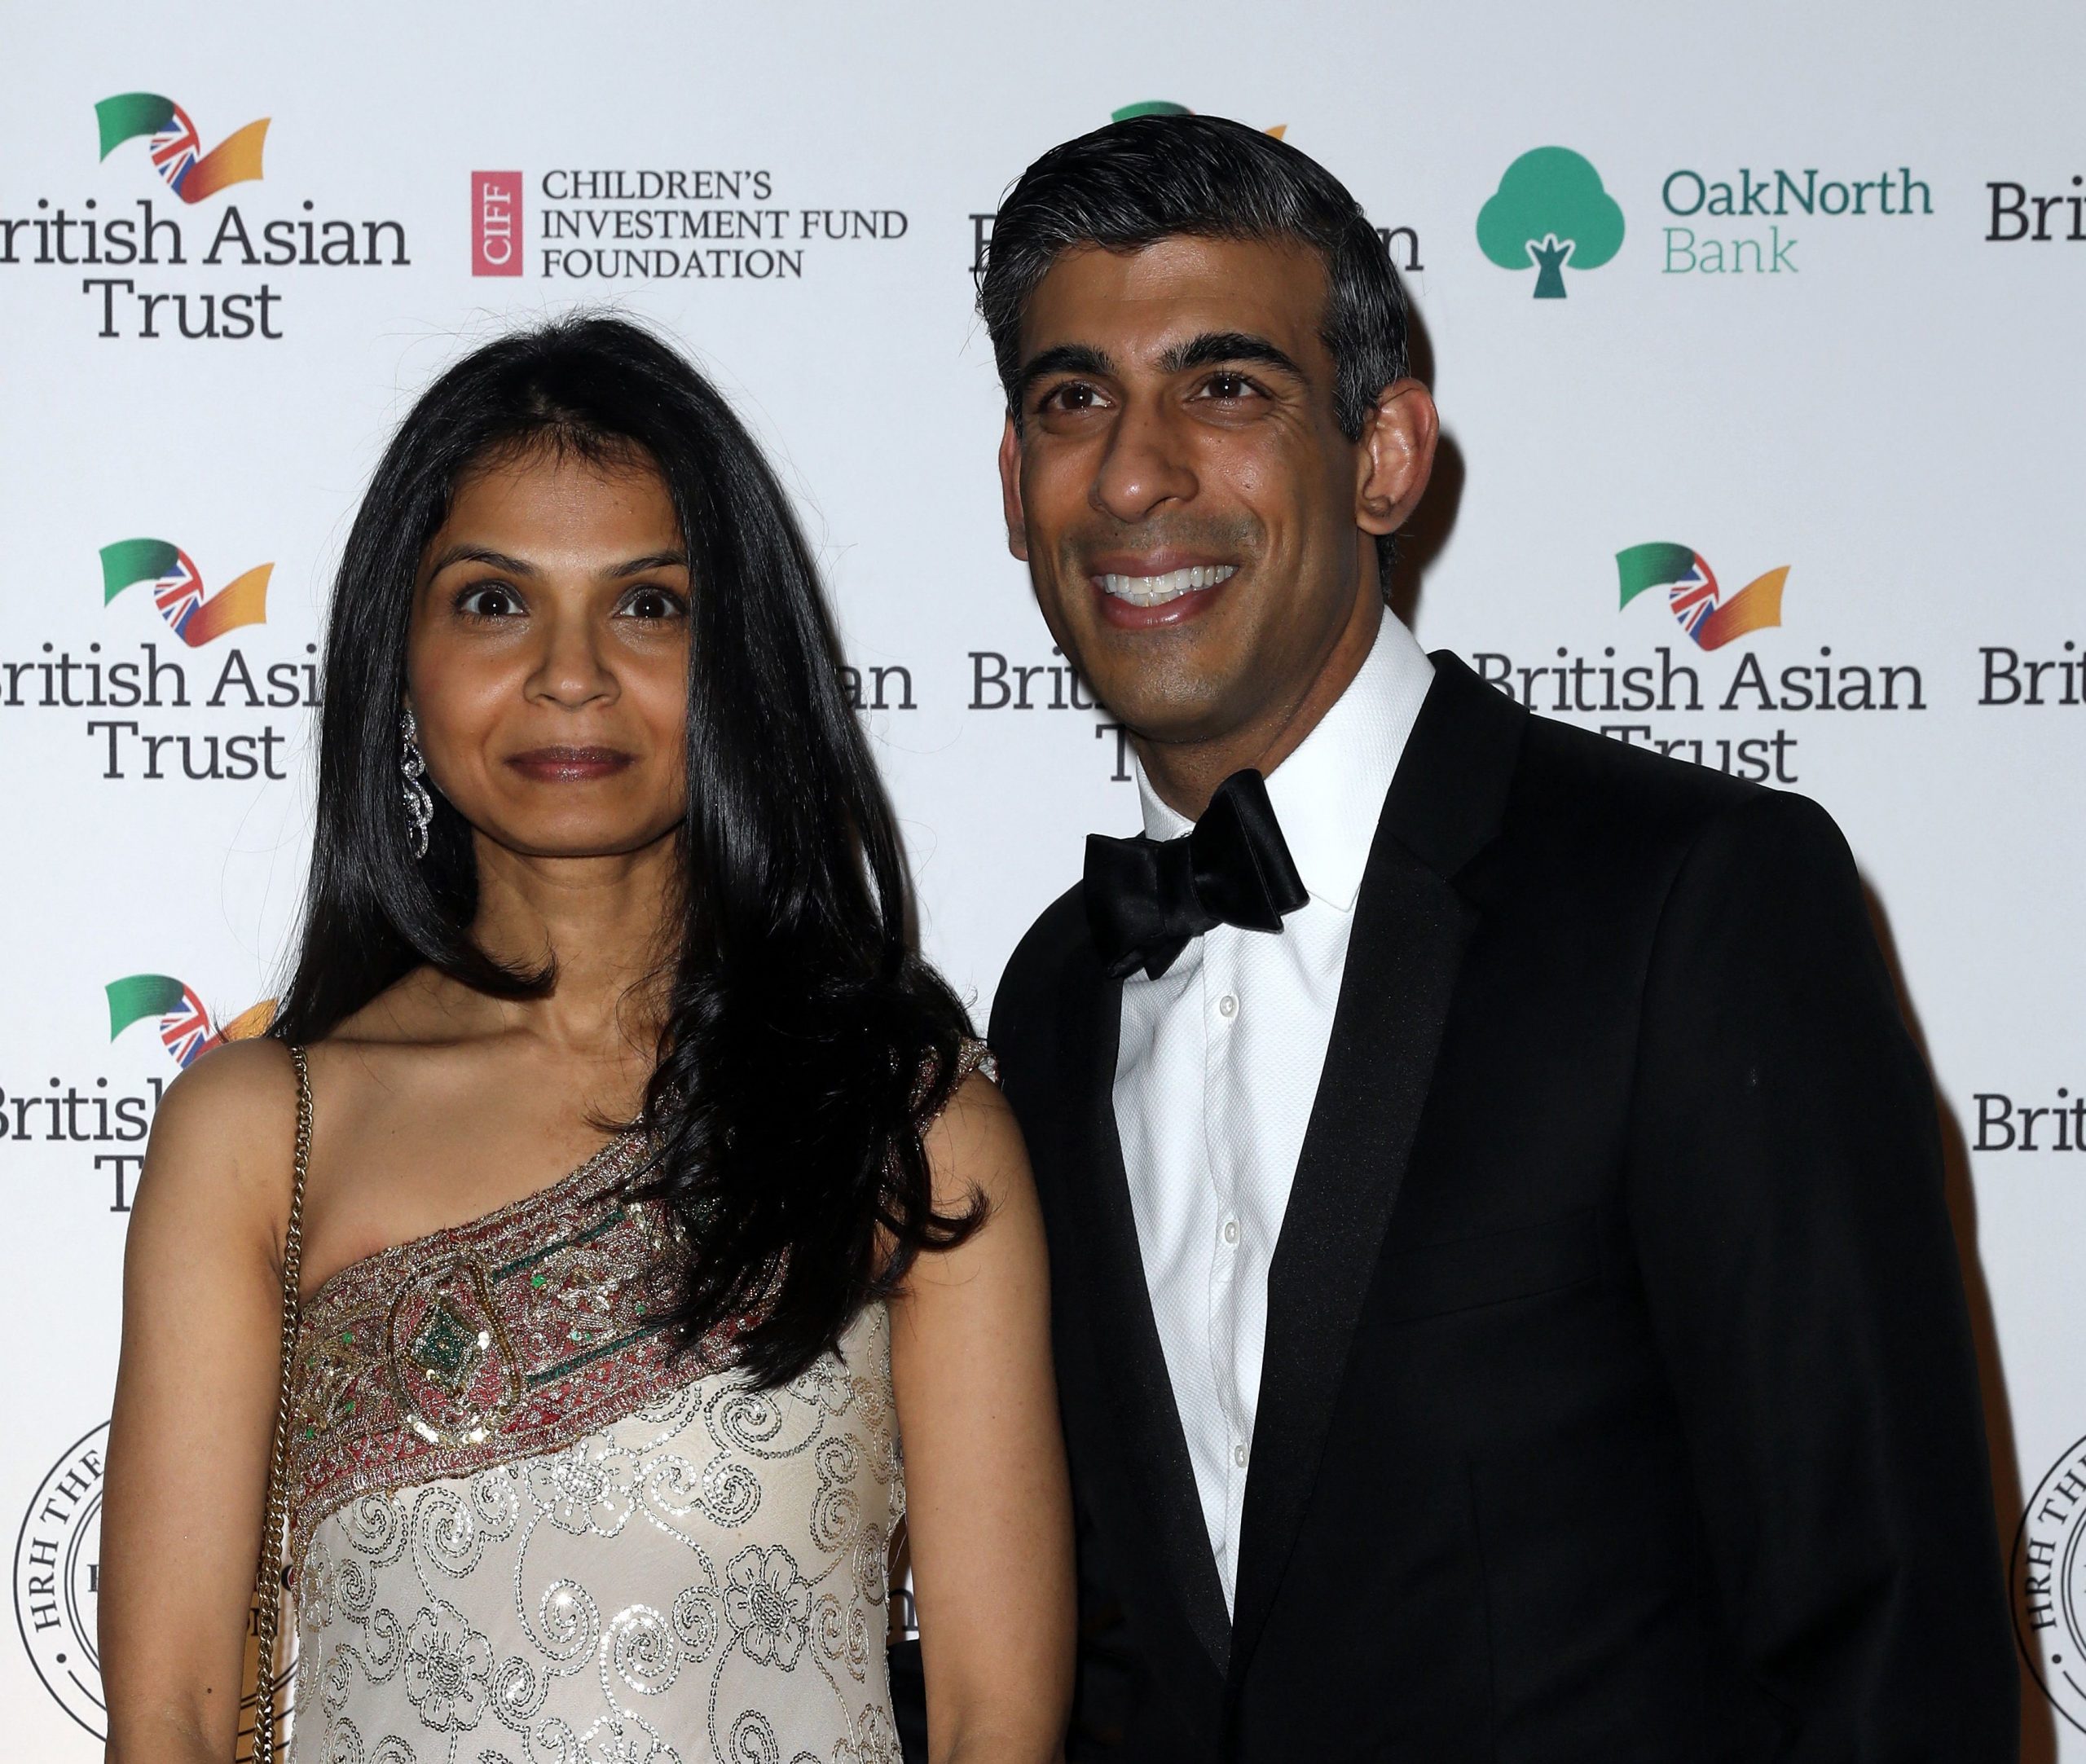 Asian Rich List 2019: Hinduja Family Tops Britan's Asian Rich List